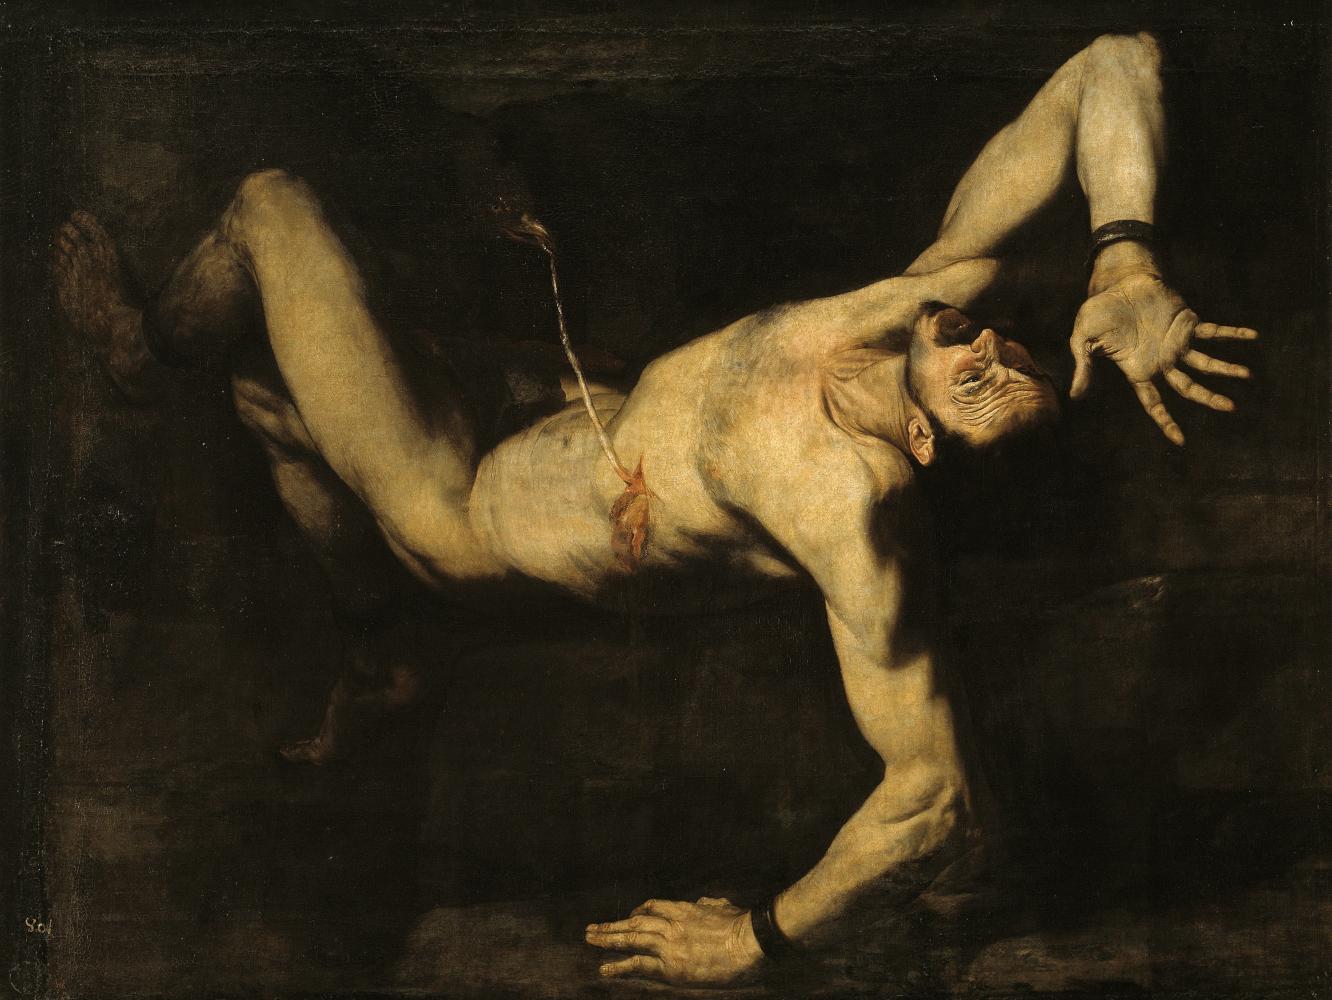 Jusepe de Ribera "Tytios", 1632